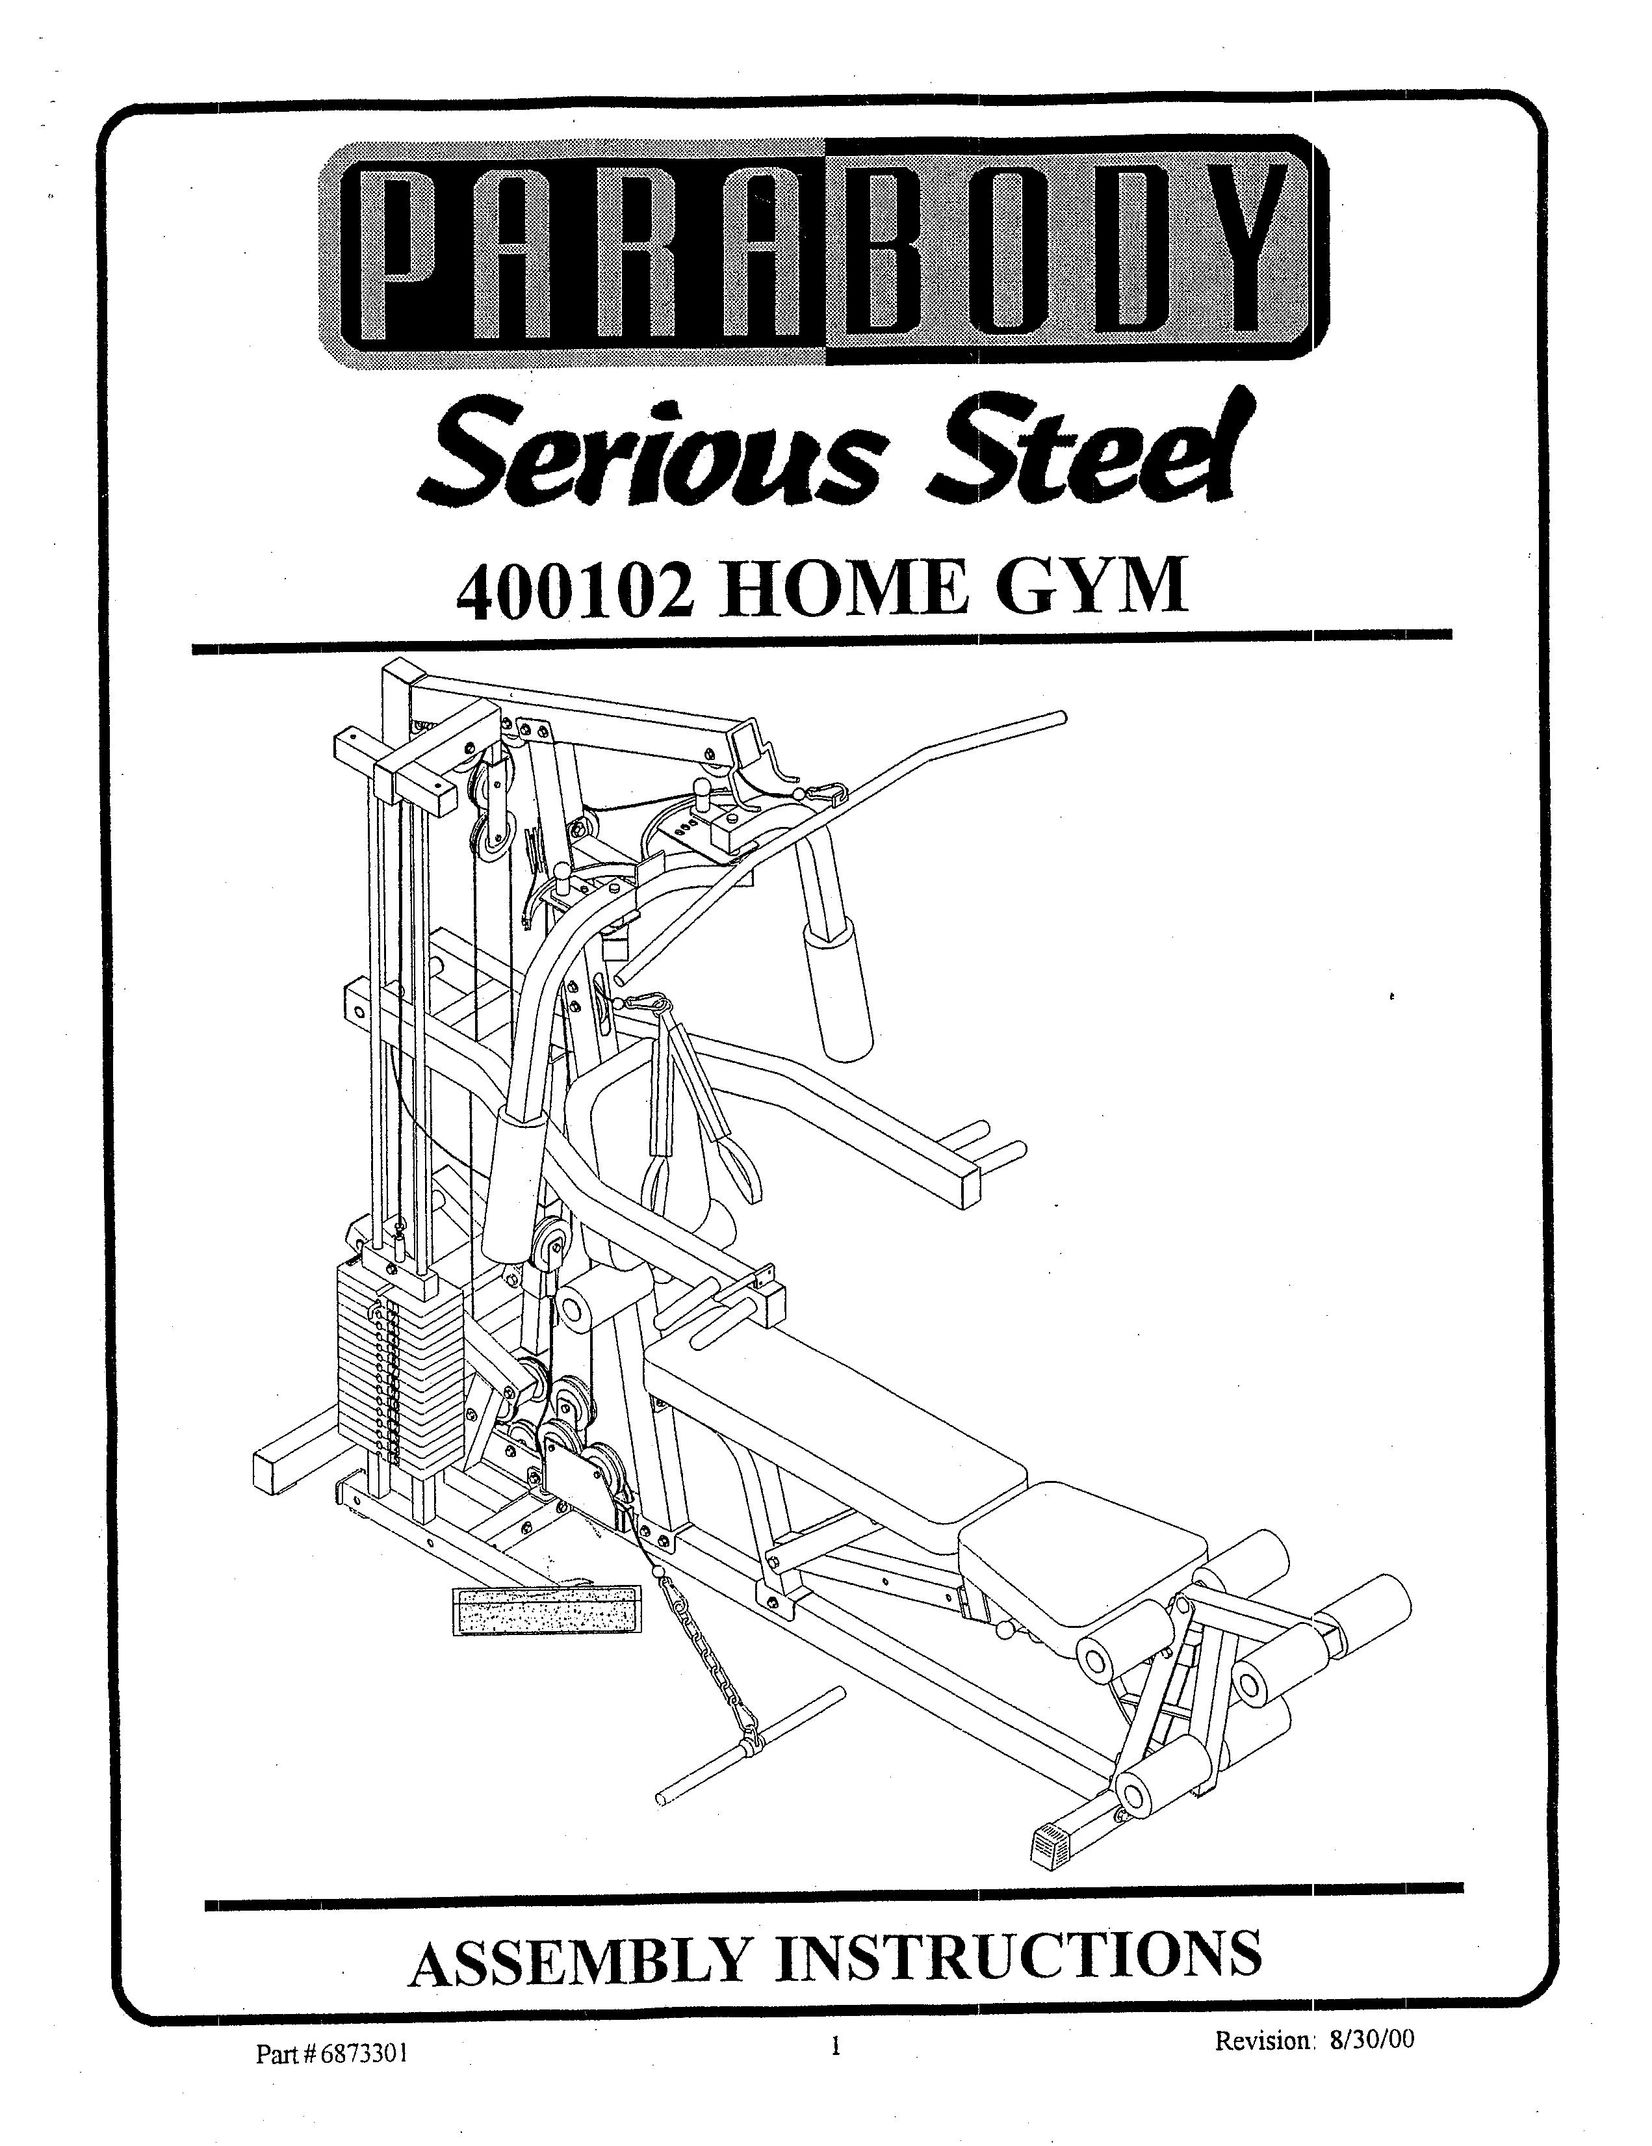 ParaBody 400102 Home Gym User Manual